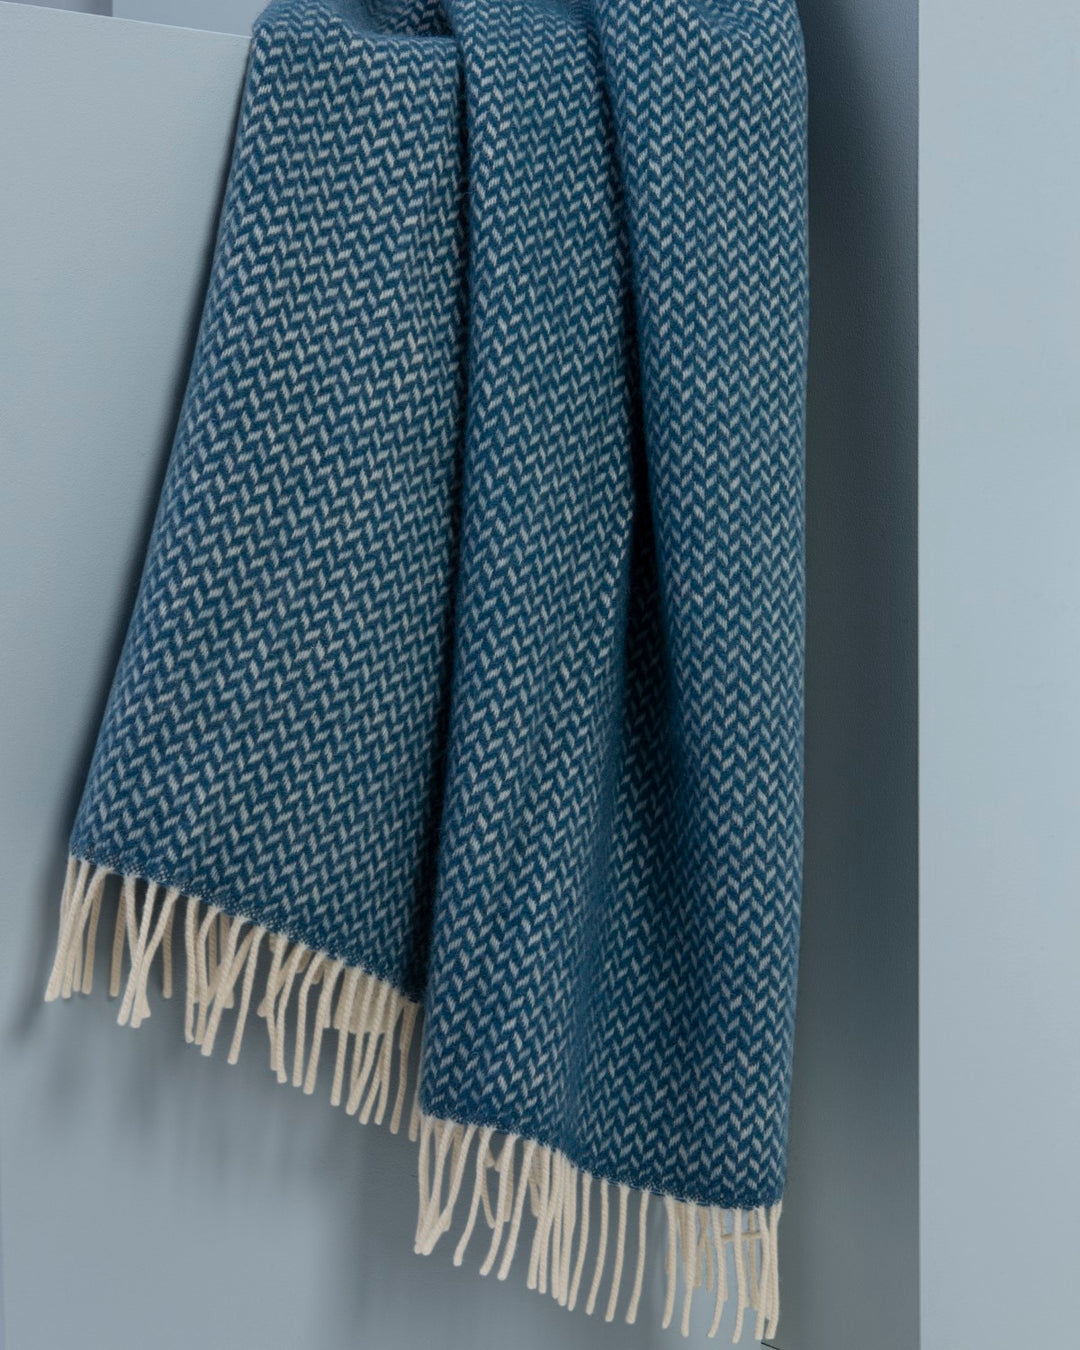 A large blue herringbone wool blanket